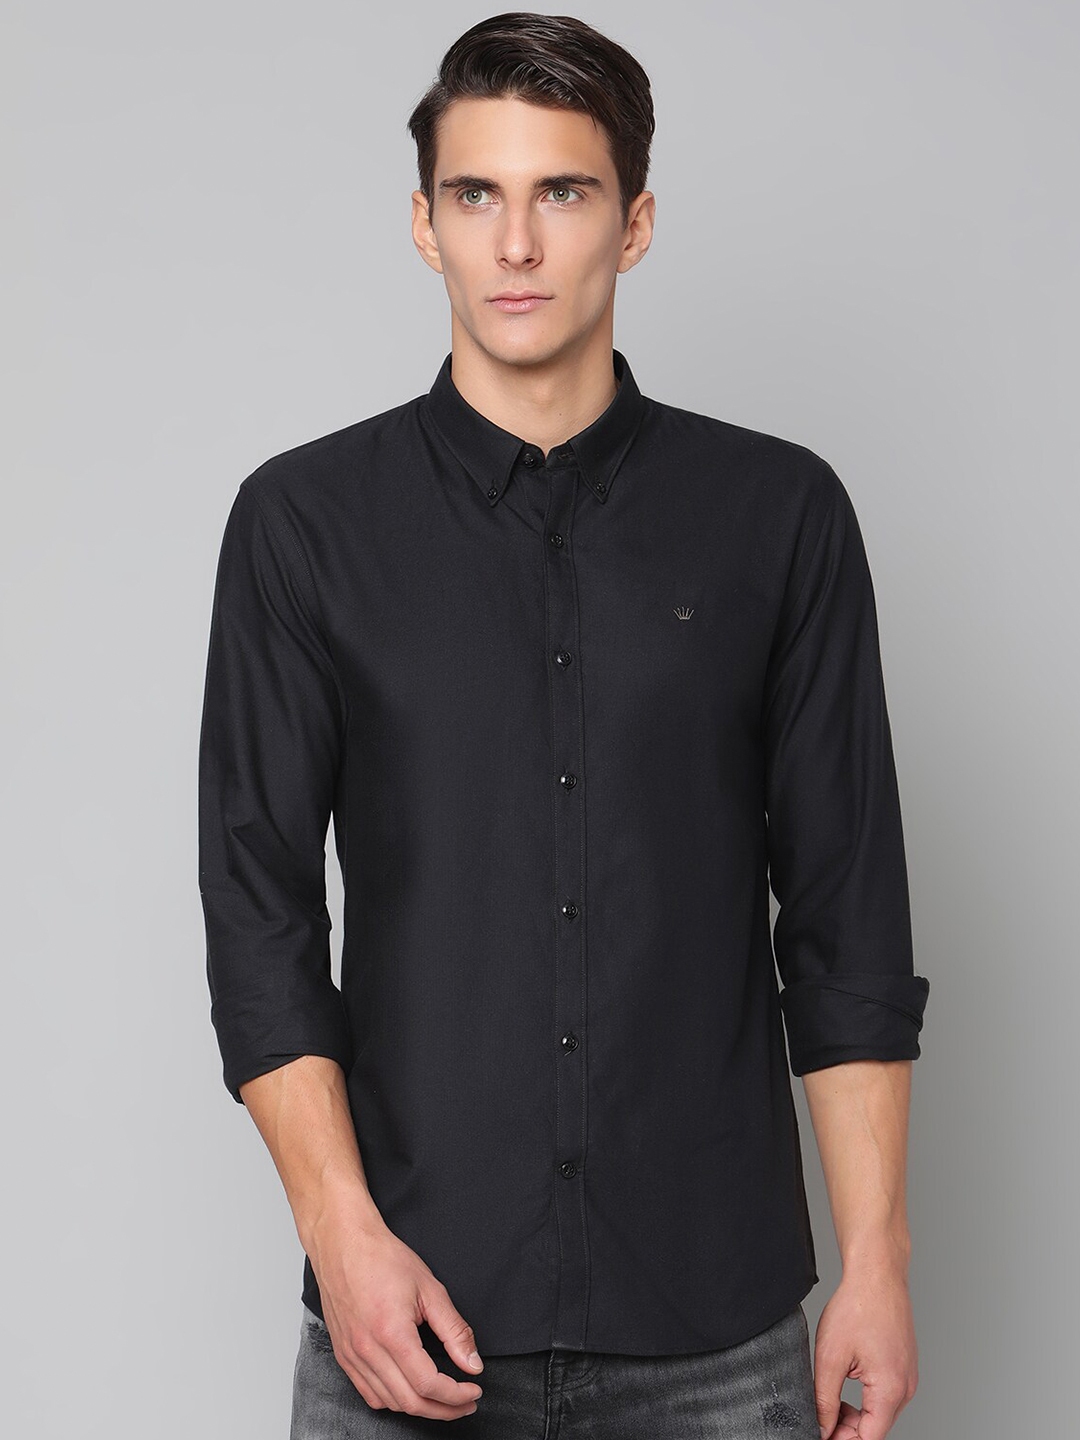 Buy JUNK De LUXE Men Black Slim Fit Pure Cotton Casual Shirt - Shirts ...